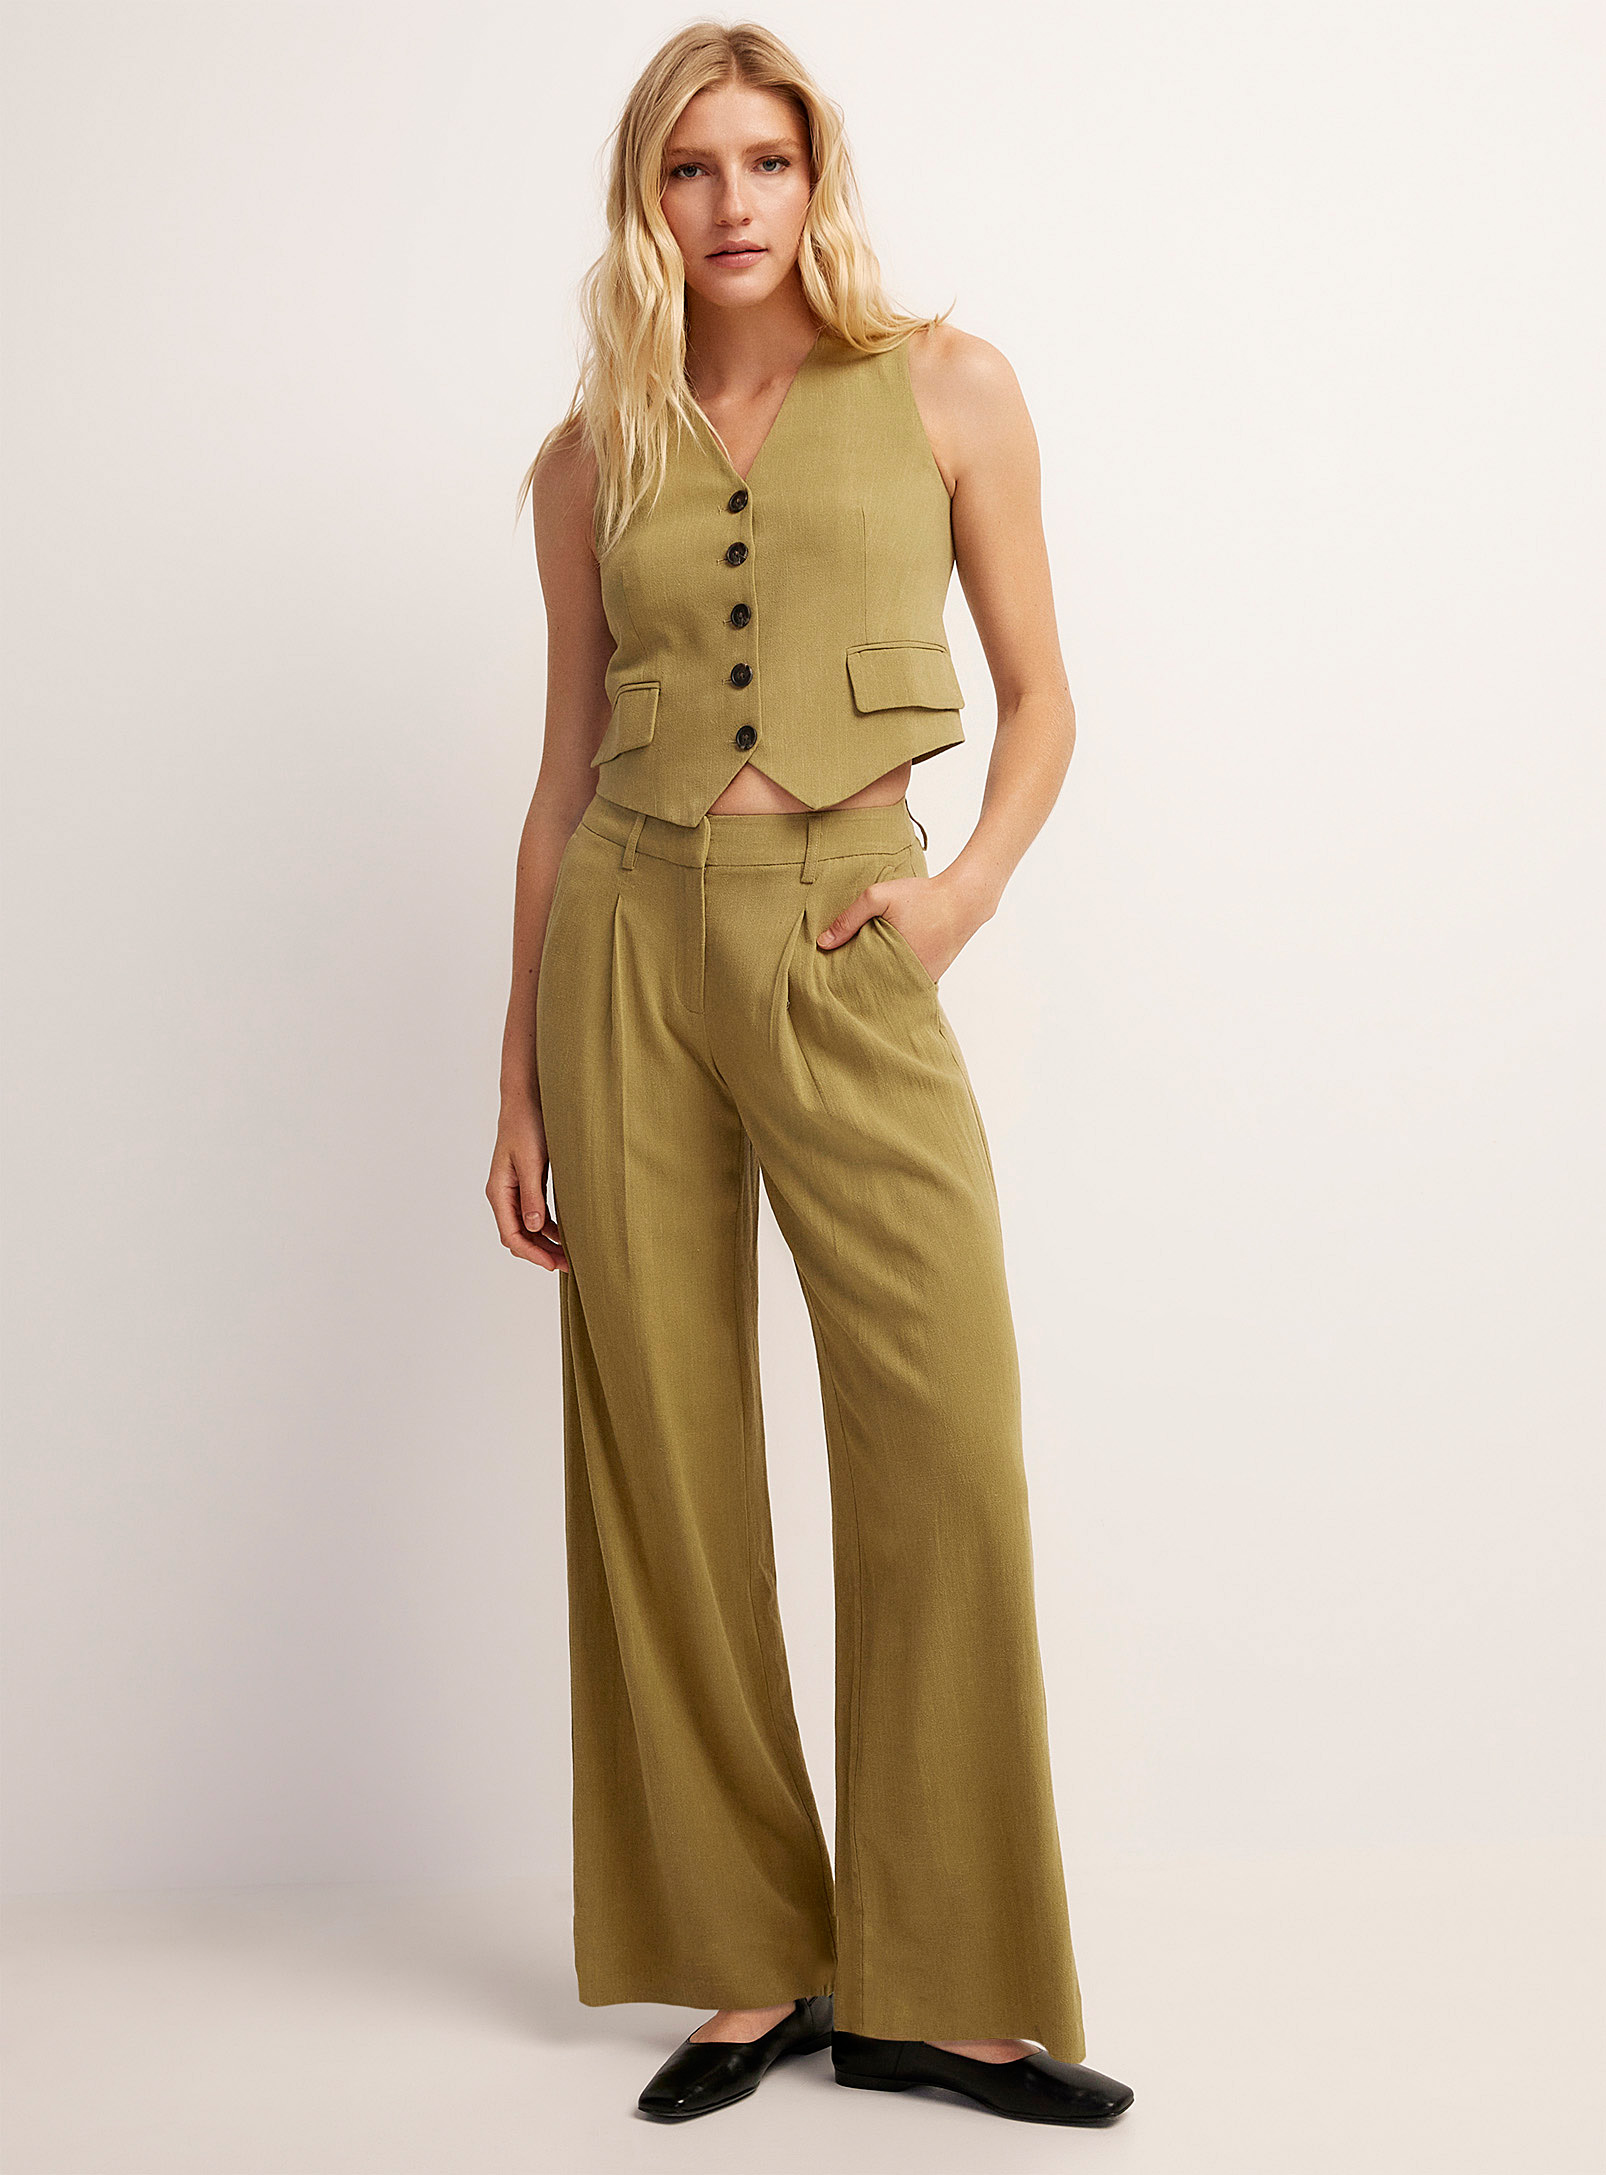 Vero Moda - Le pantalon large à plis touche de lin